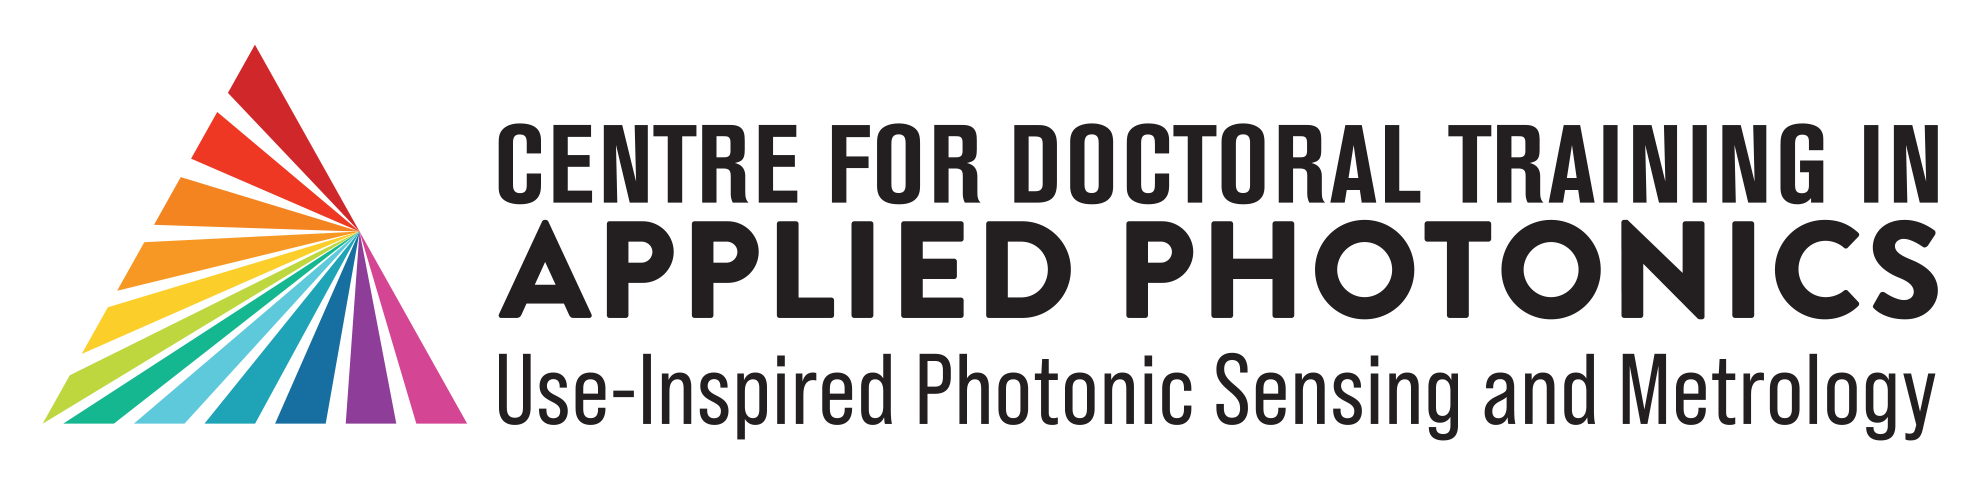 CDT Photonics logo colour